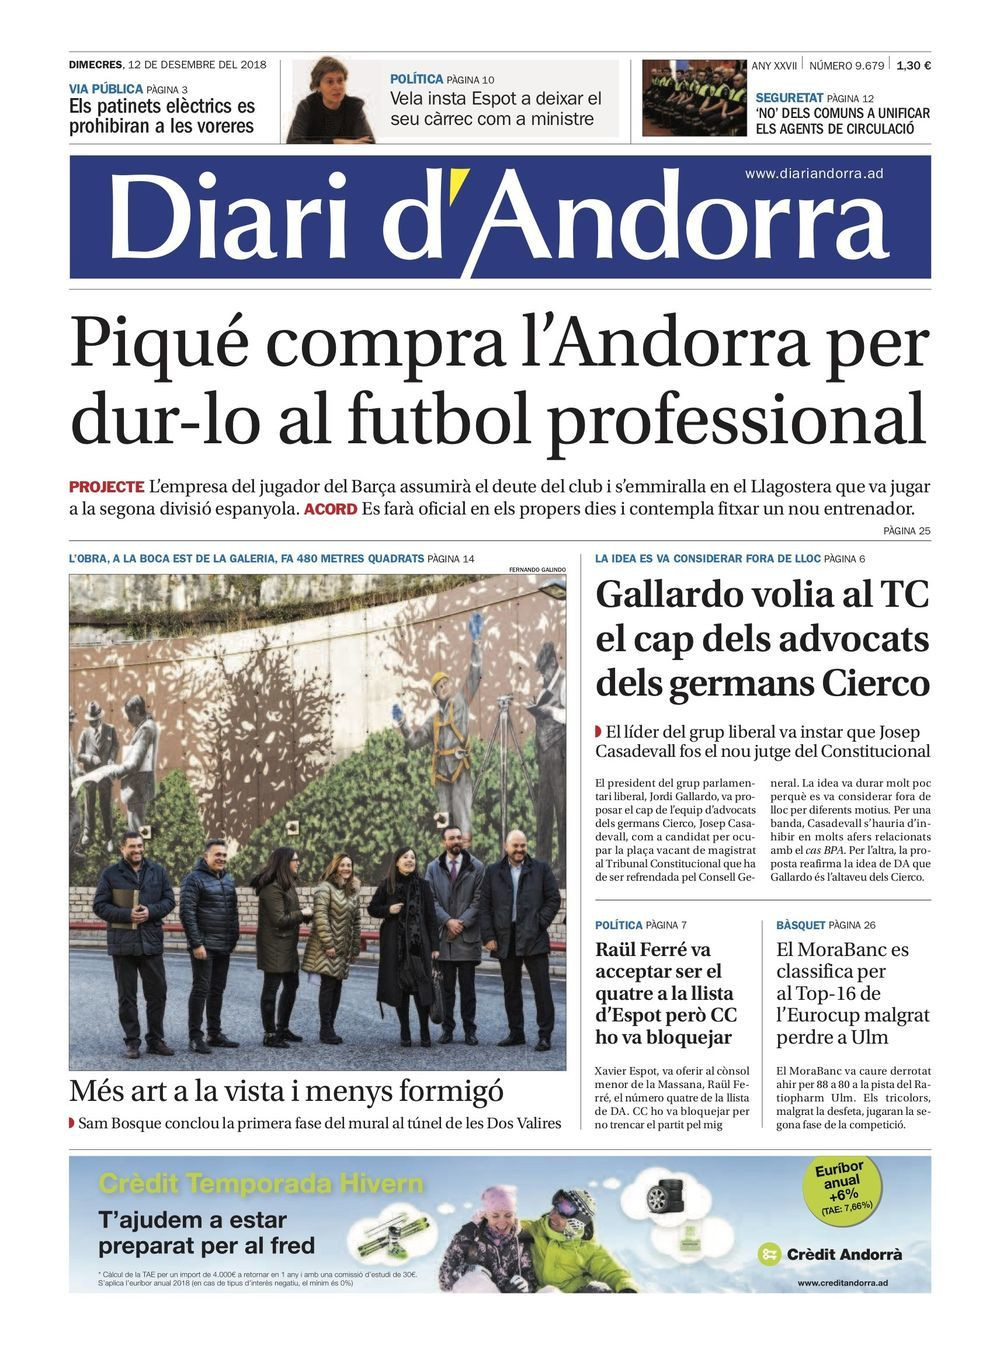 La portada del Diari d'Andorra que habla sobre la compra de Piqué